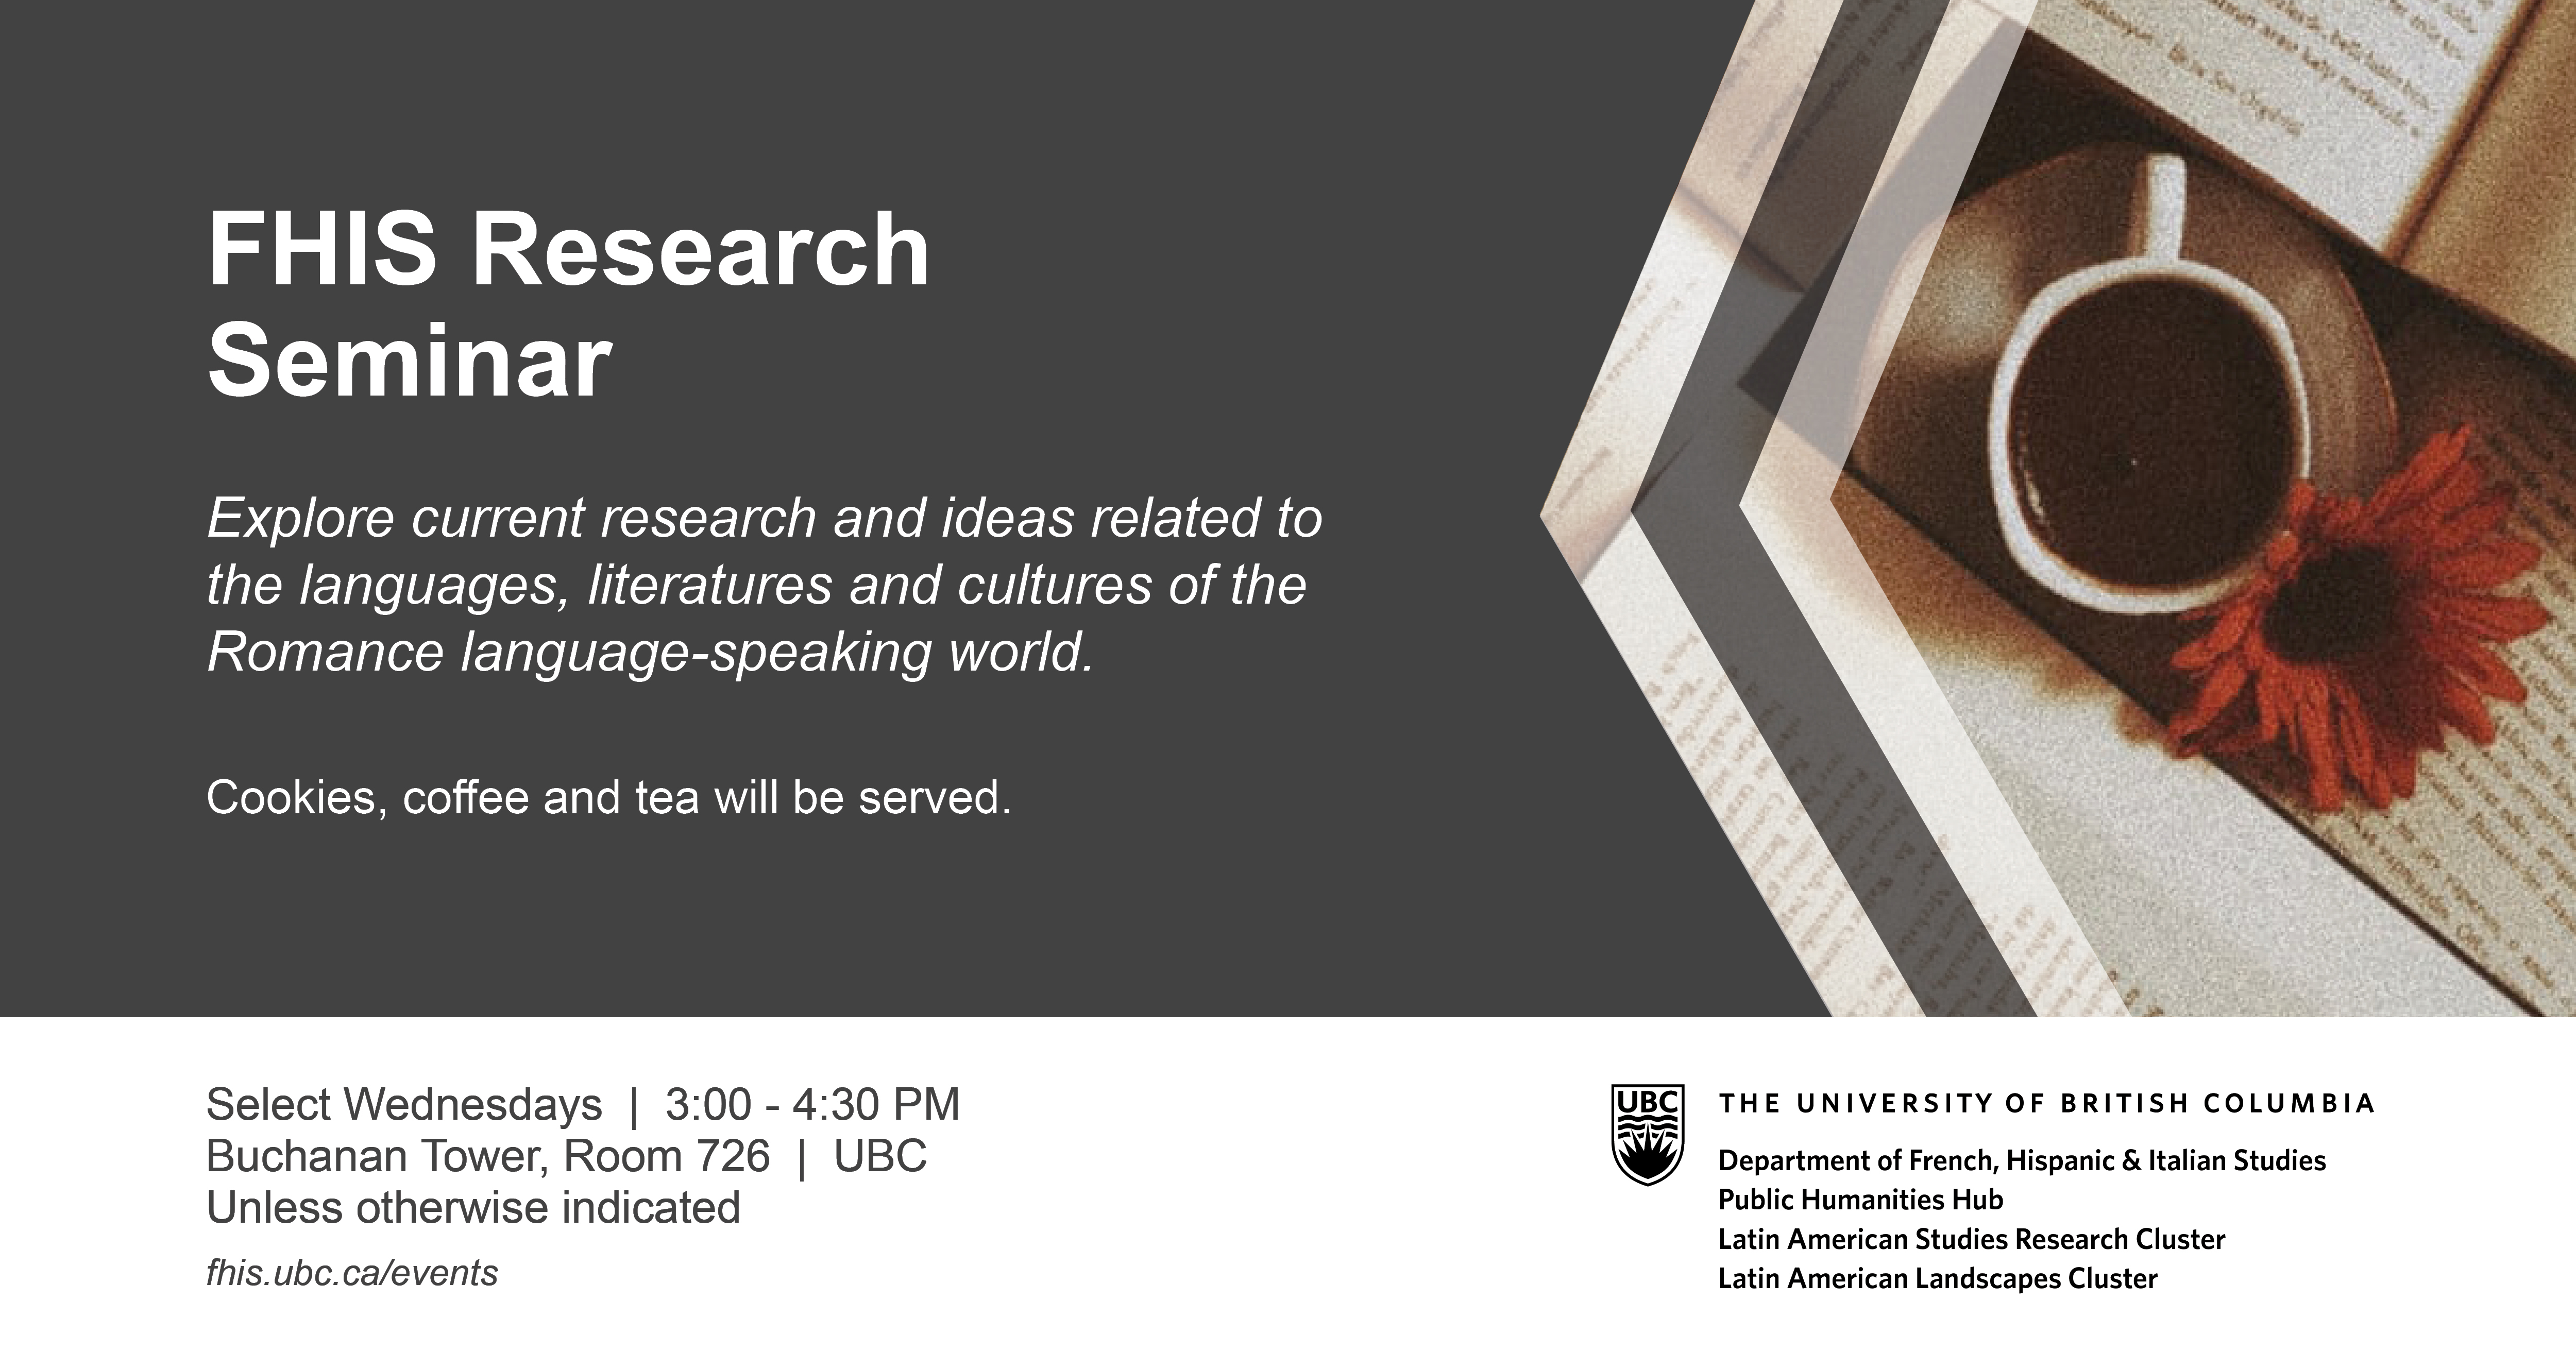 Research Seminar